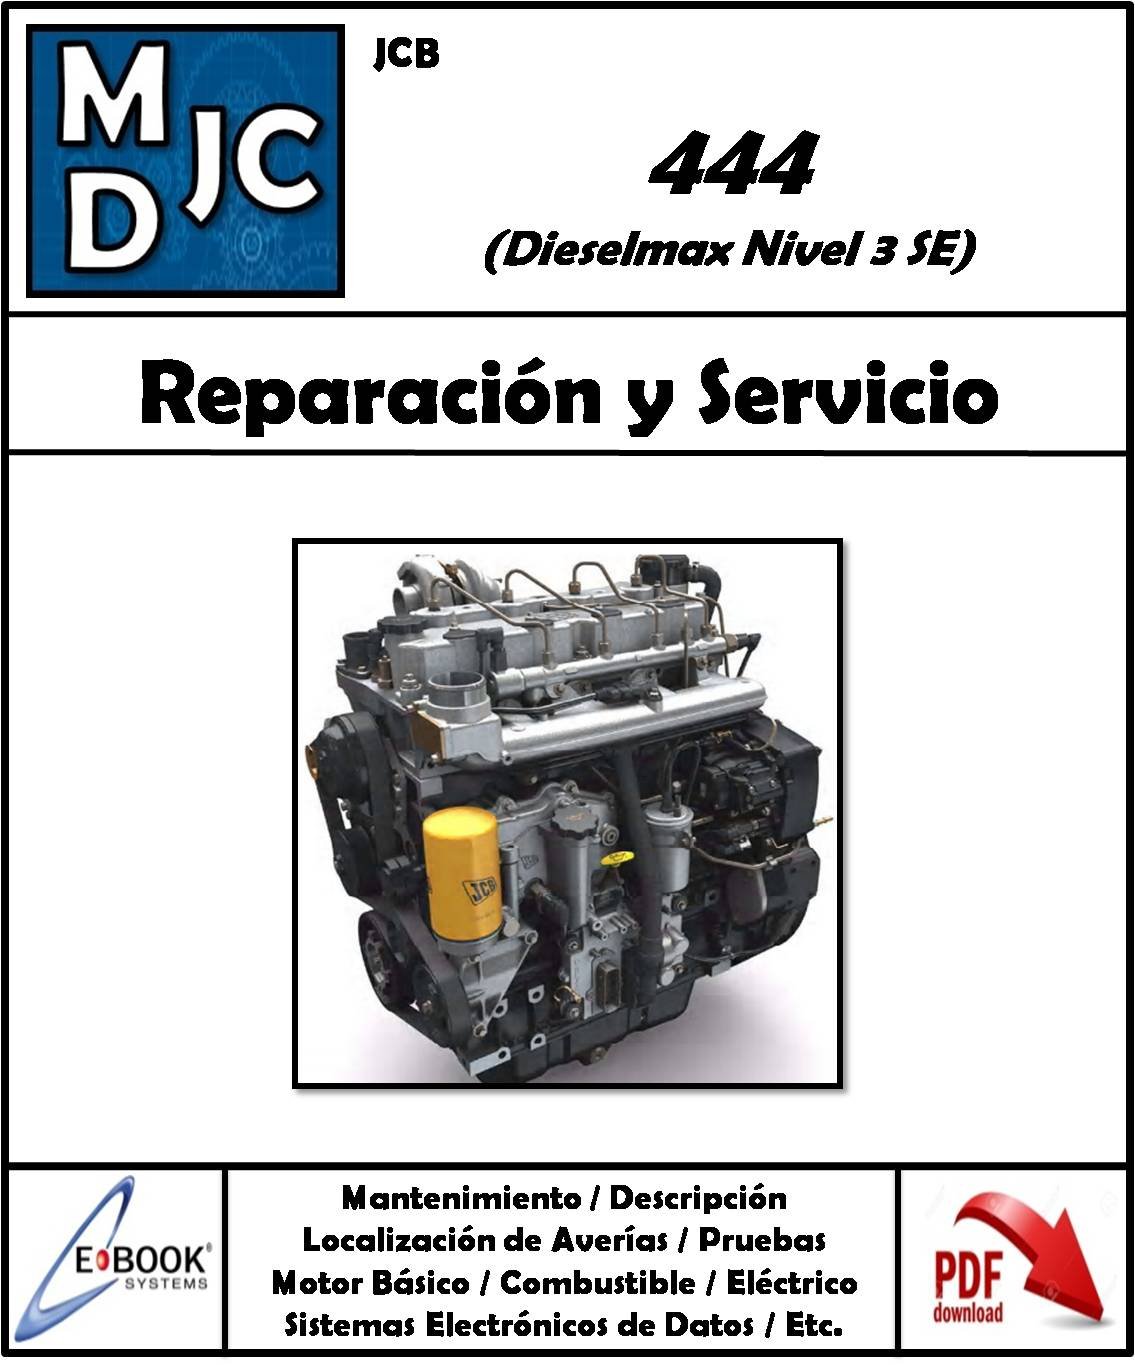 JCB 444 Dieselmax Nivel 3 SE